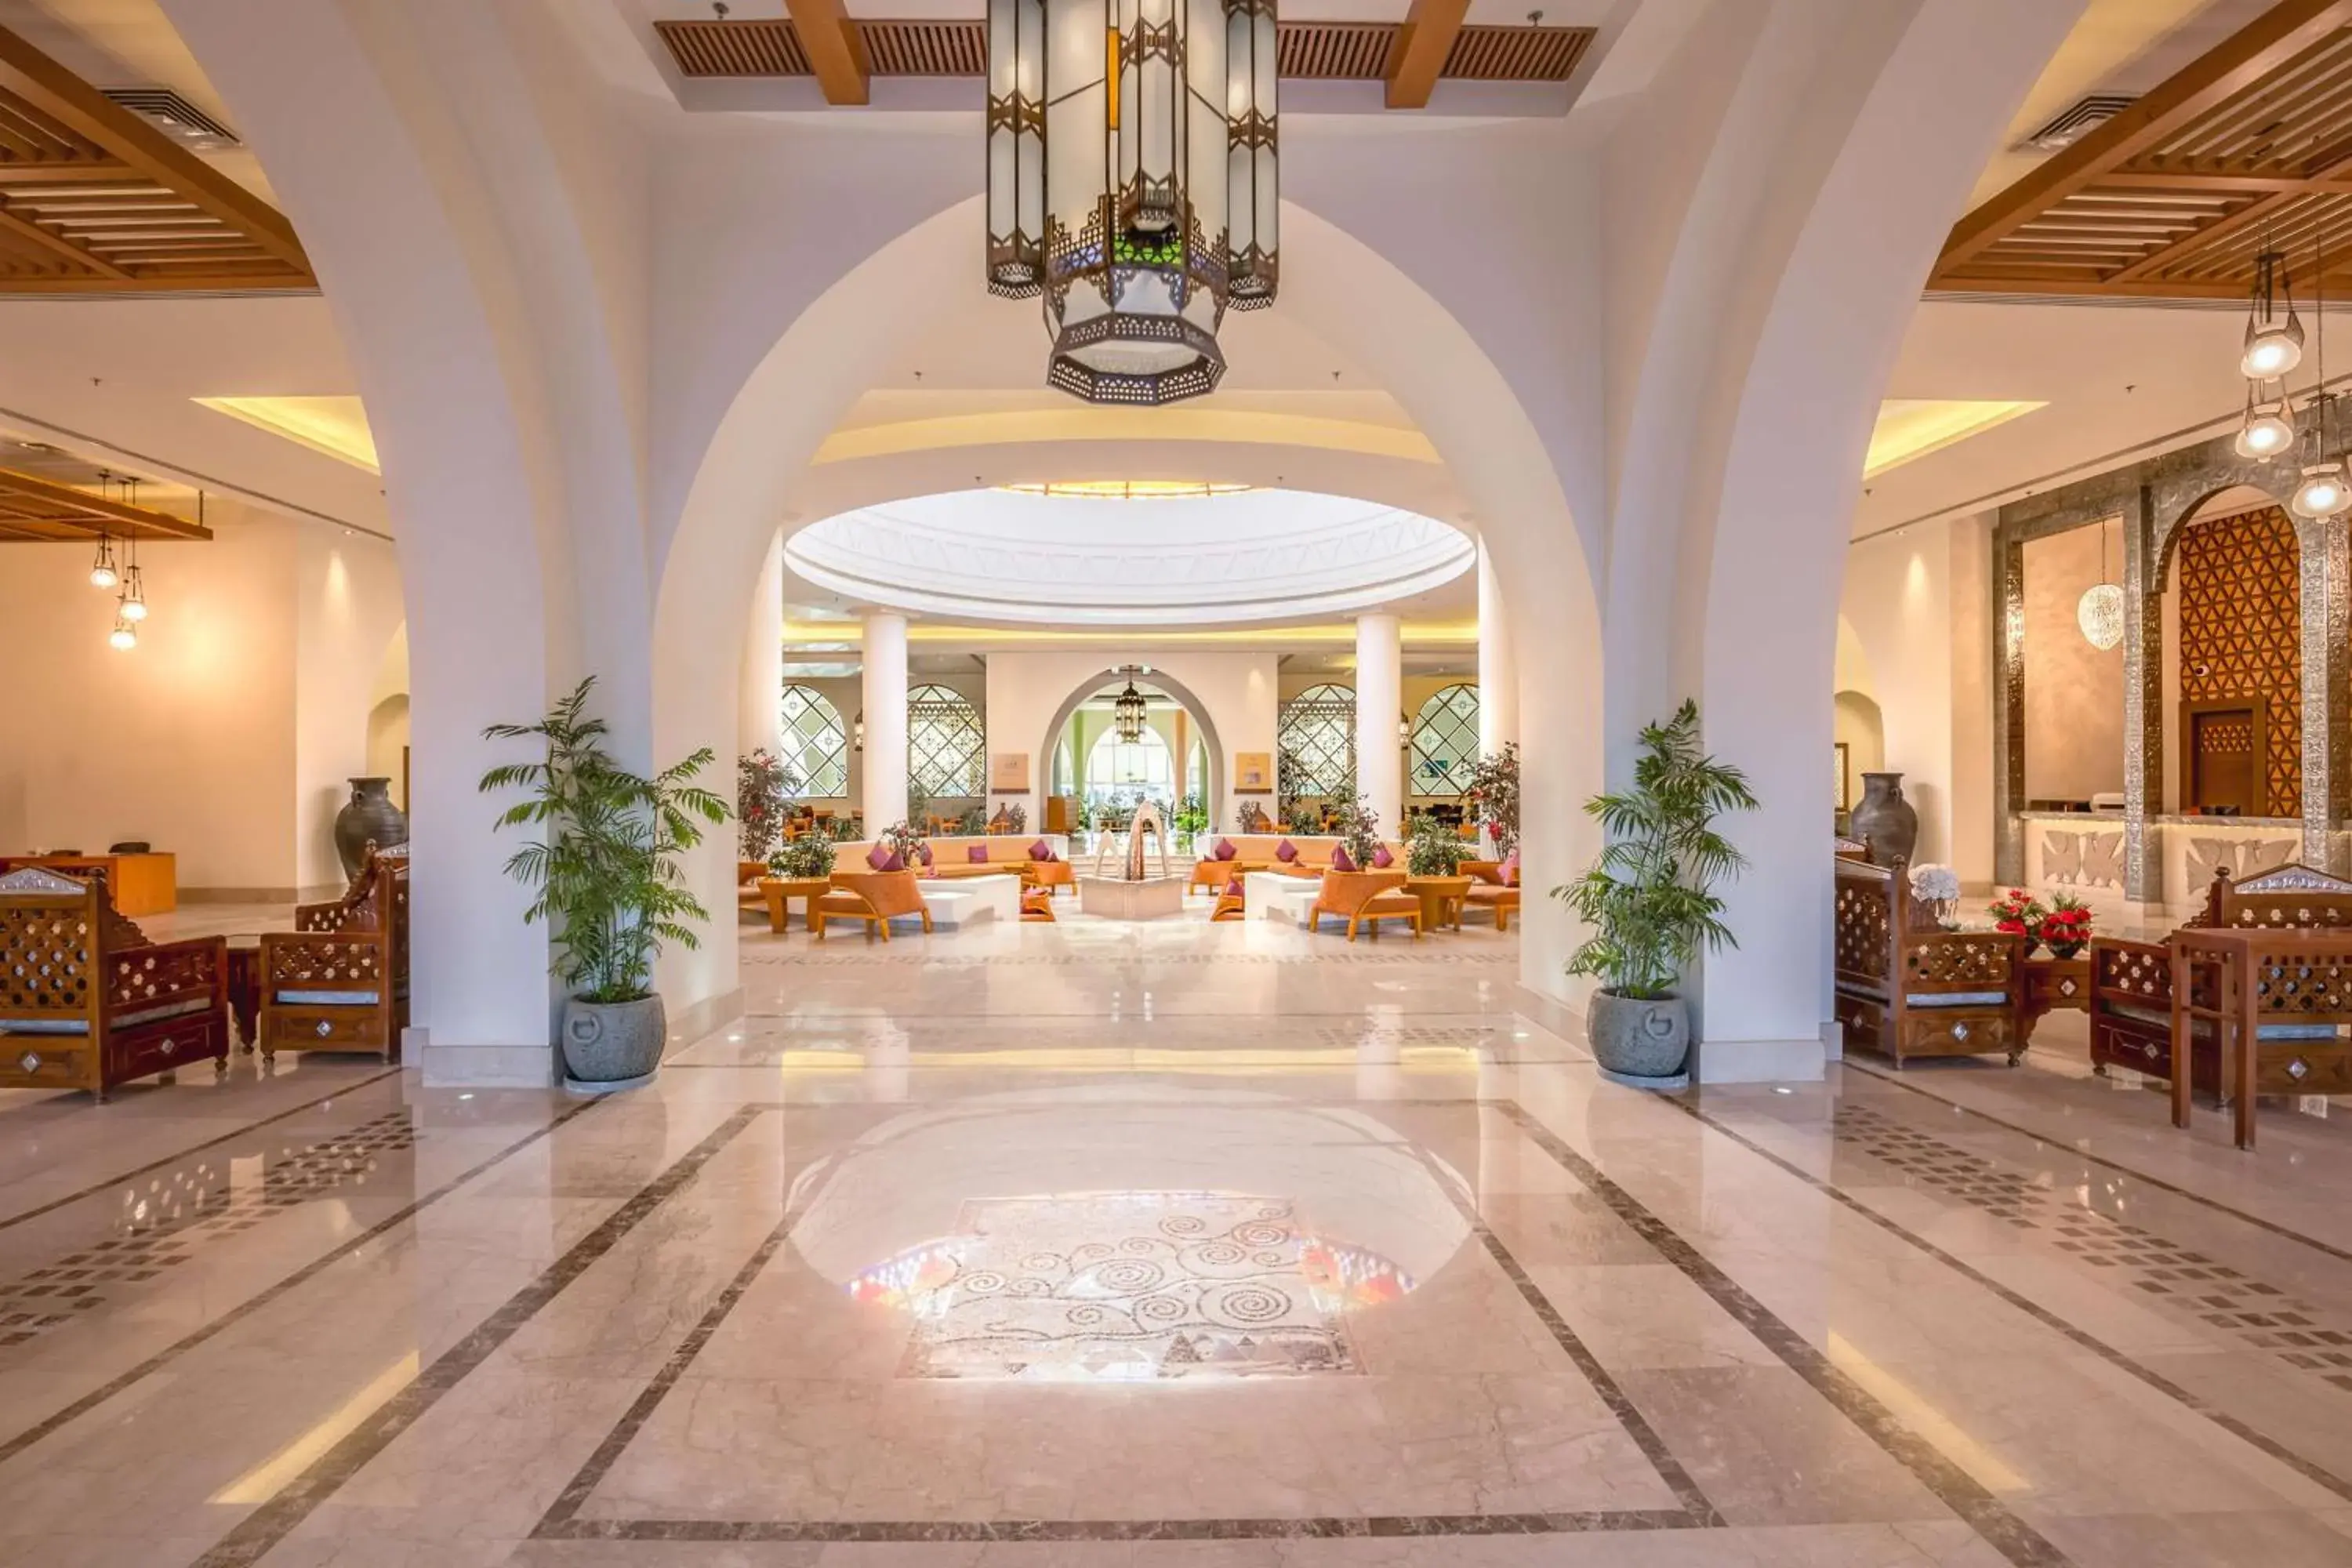 Lobby or reception in Hilton Marsa Alam Nubian Resort